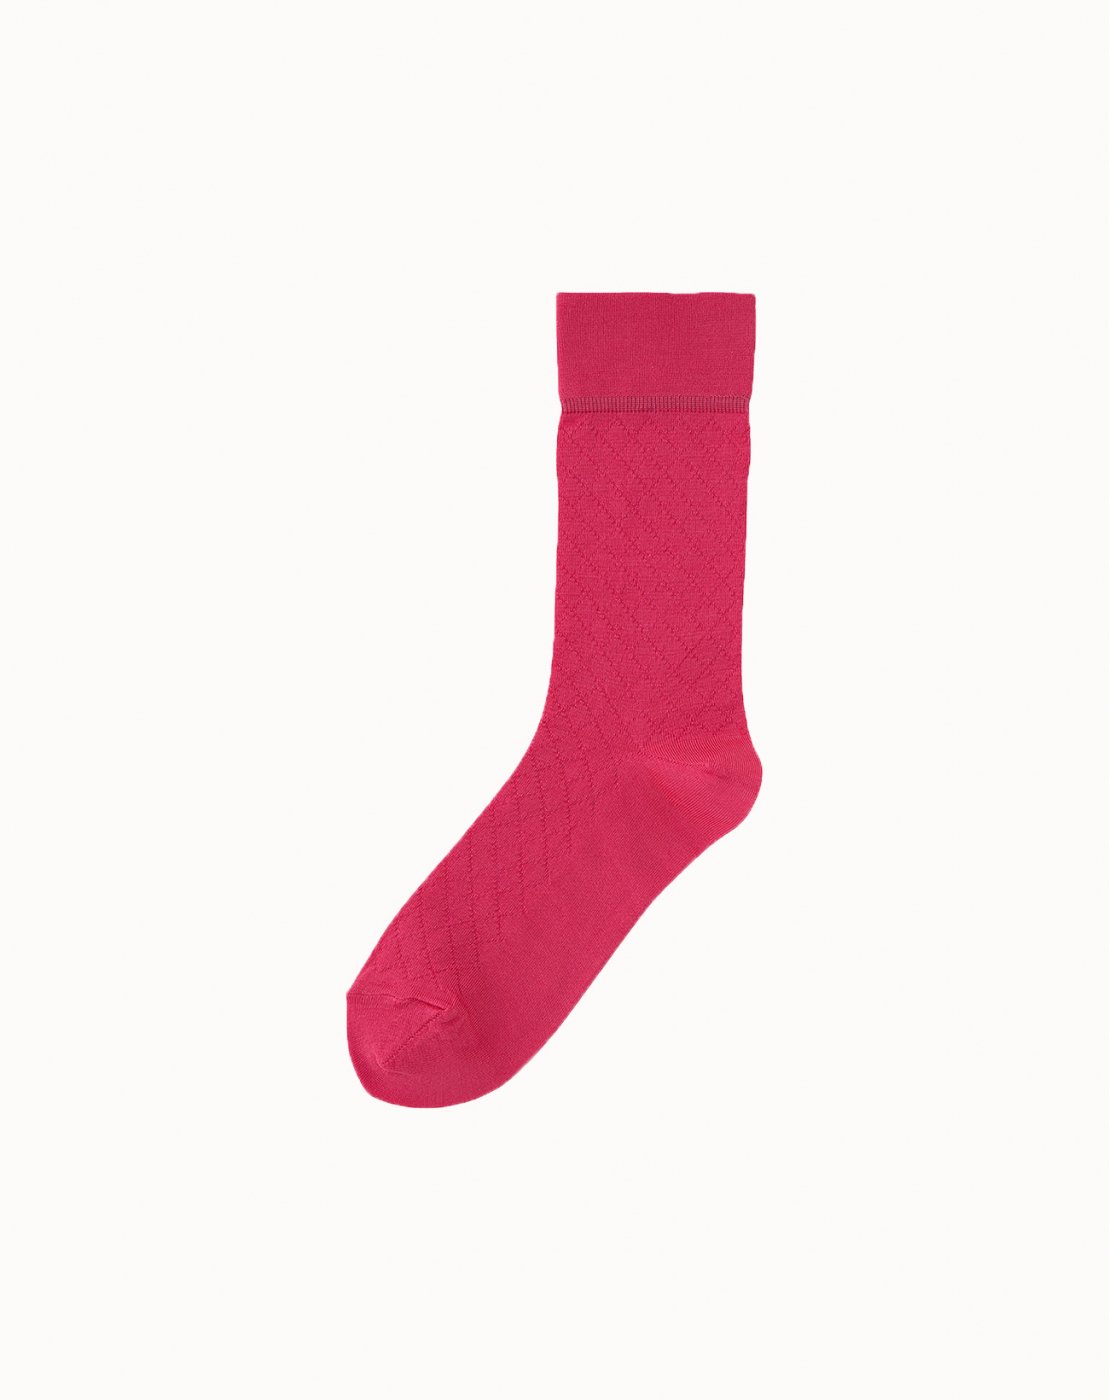 leur logette - Silk Mesh Socks - Pink